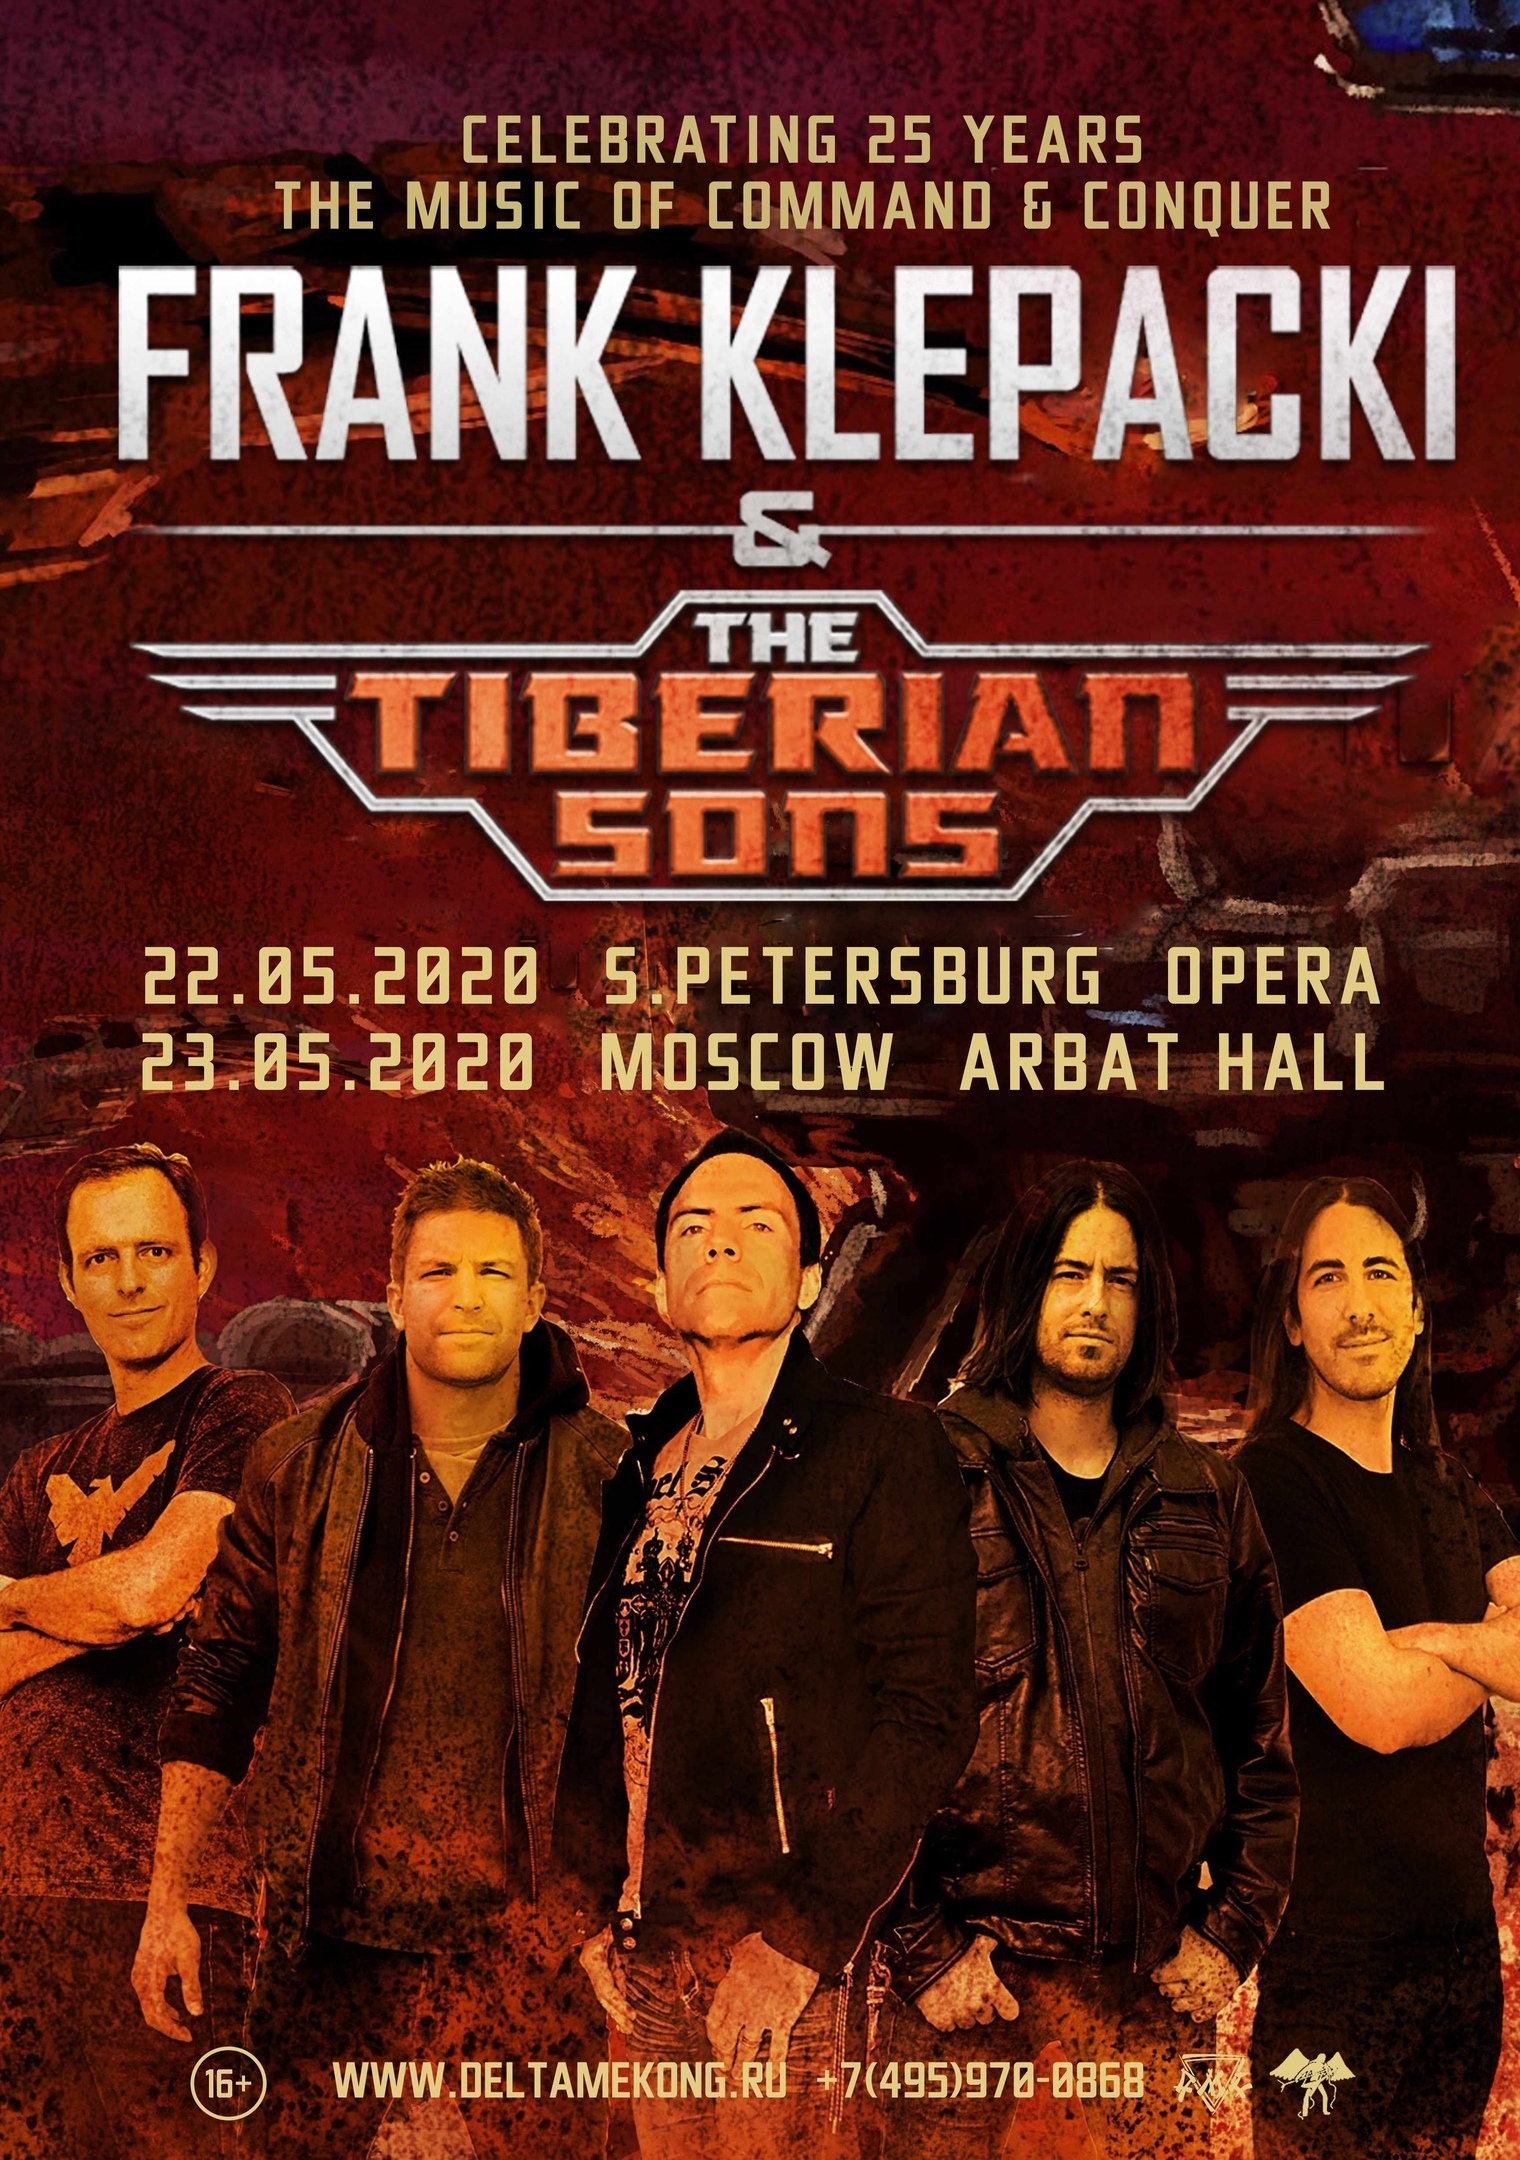 Композитор Фрэнк Клепаки даст два концерта в России — в честь 25-летия Command & Conquer 1